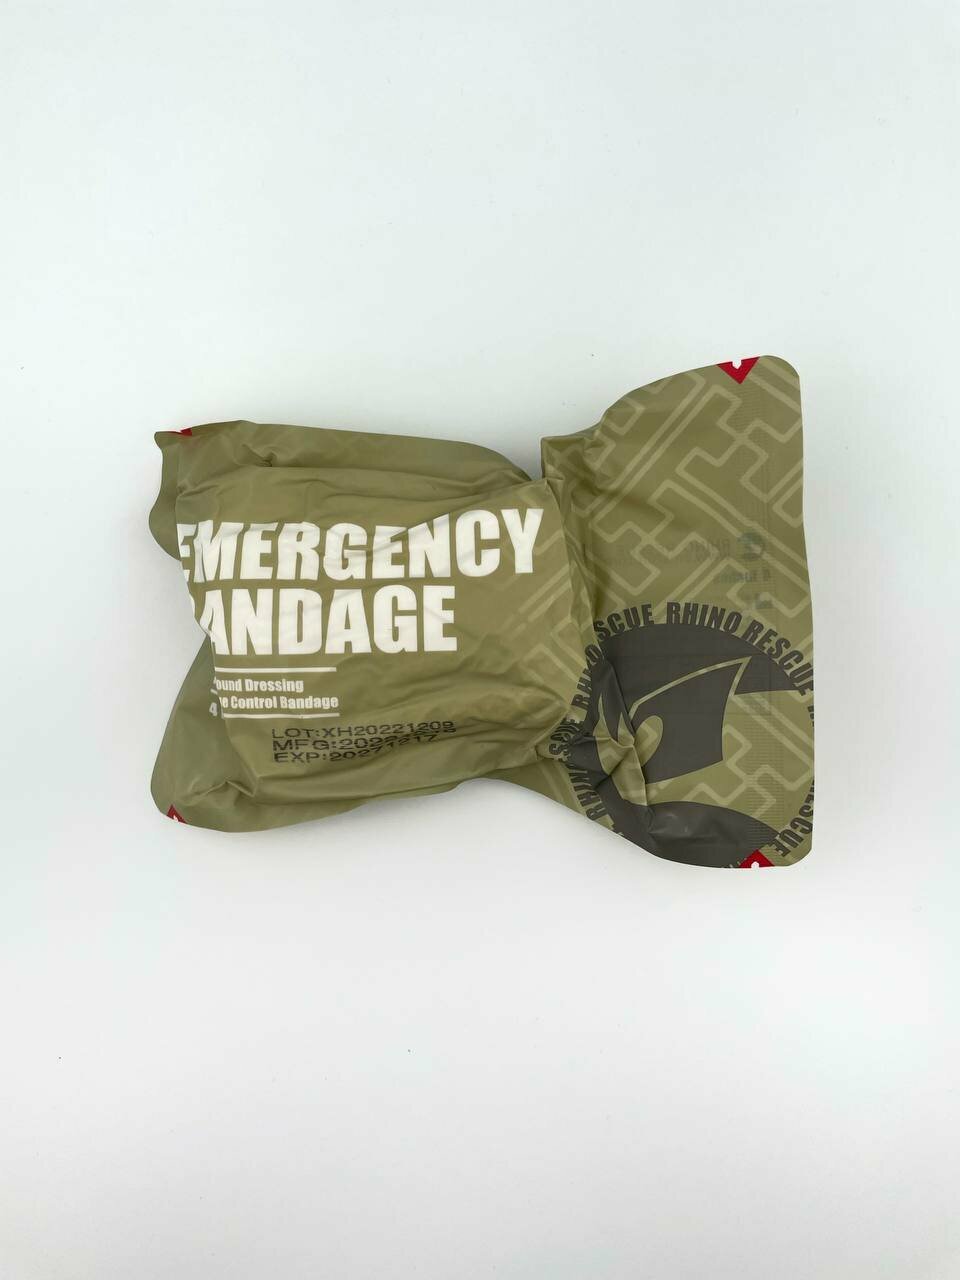 Emergency Bandage ИПП/ППИ тактический медицинский компрессионный бандаж 4"2 - 1 шт